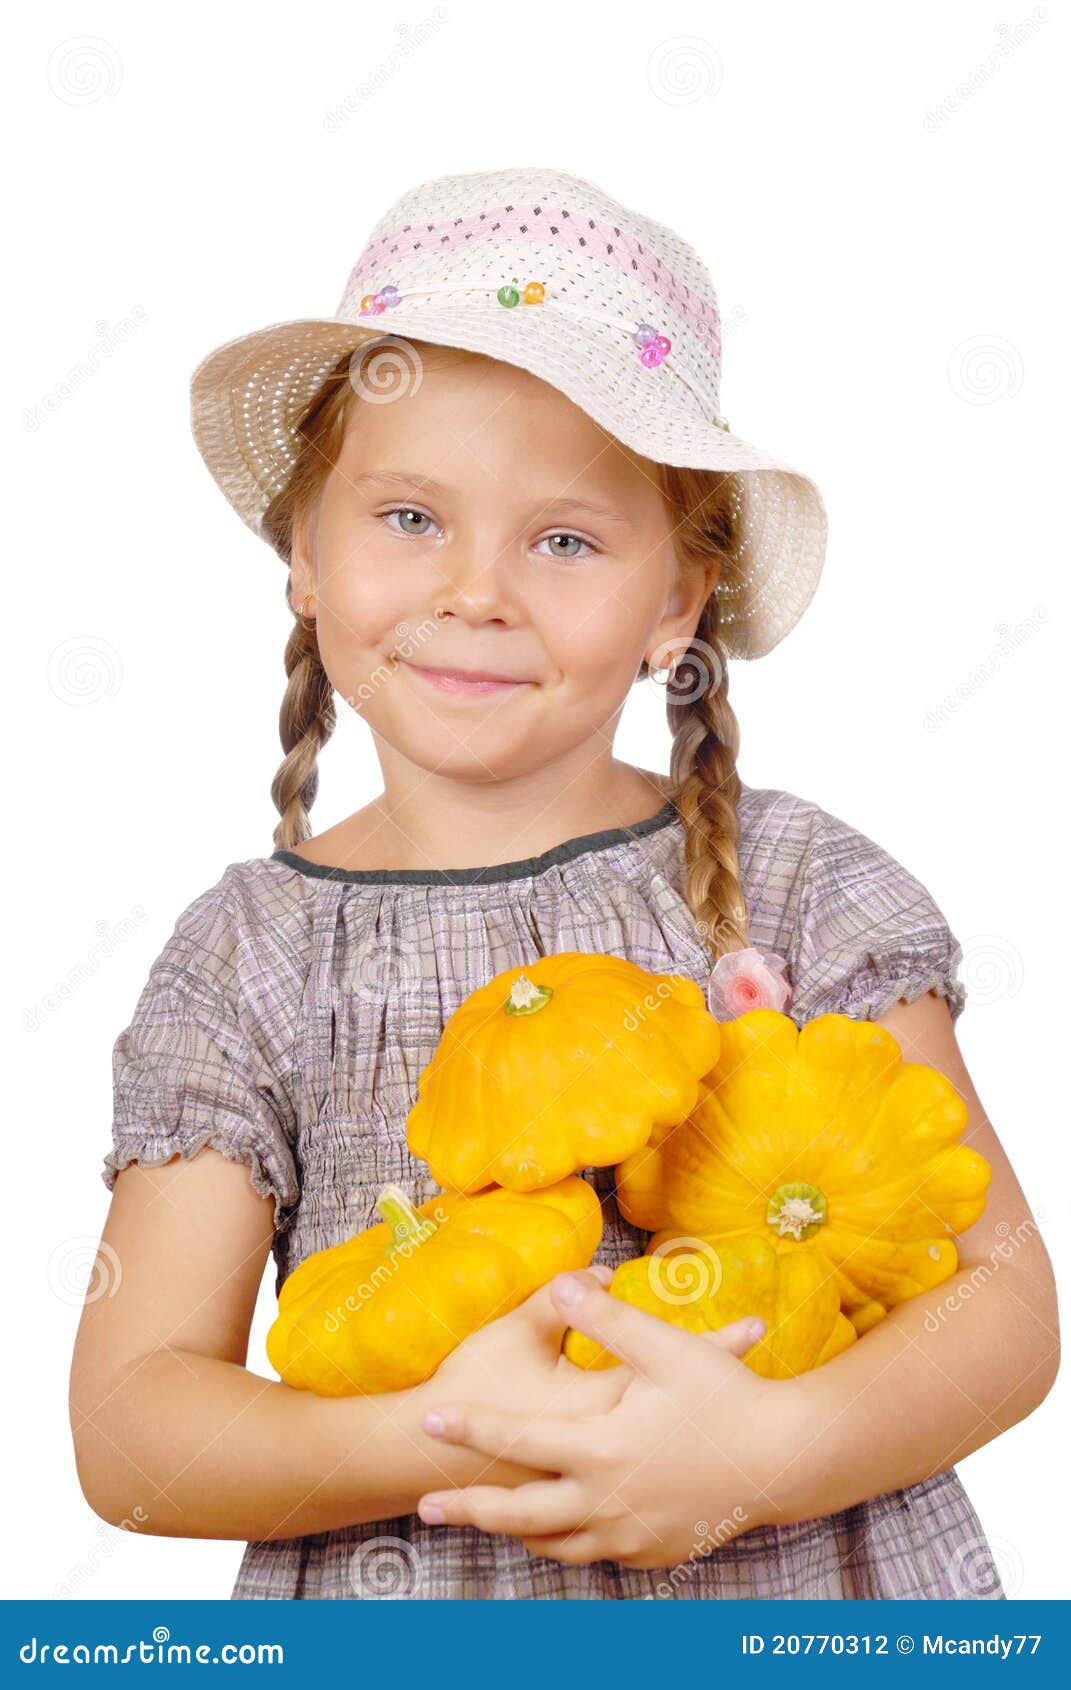 南瓜的女婴 库存图片. 图片 包括有 愉快, 南瓜, 女孩, 帽子, 甜甜, 婴孩, 逗人喜爱, 微笑 - 27702203